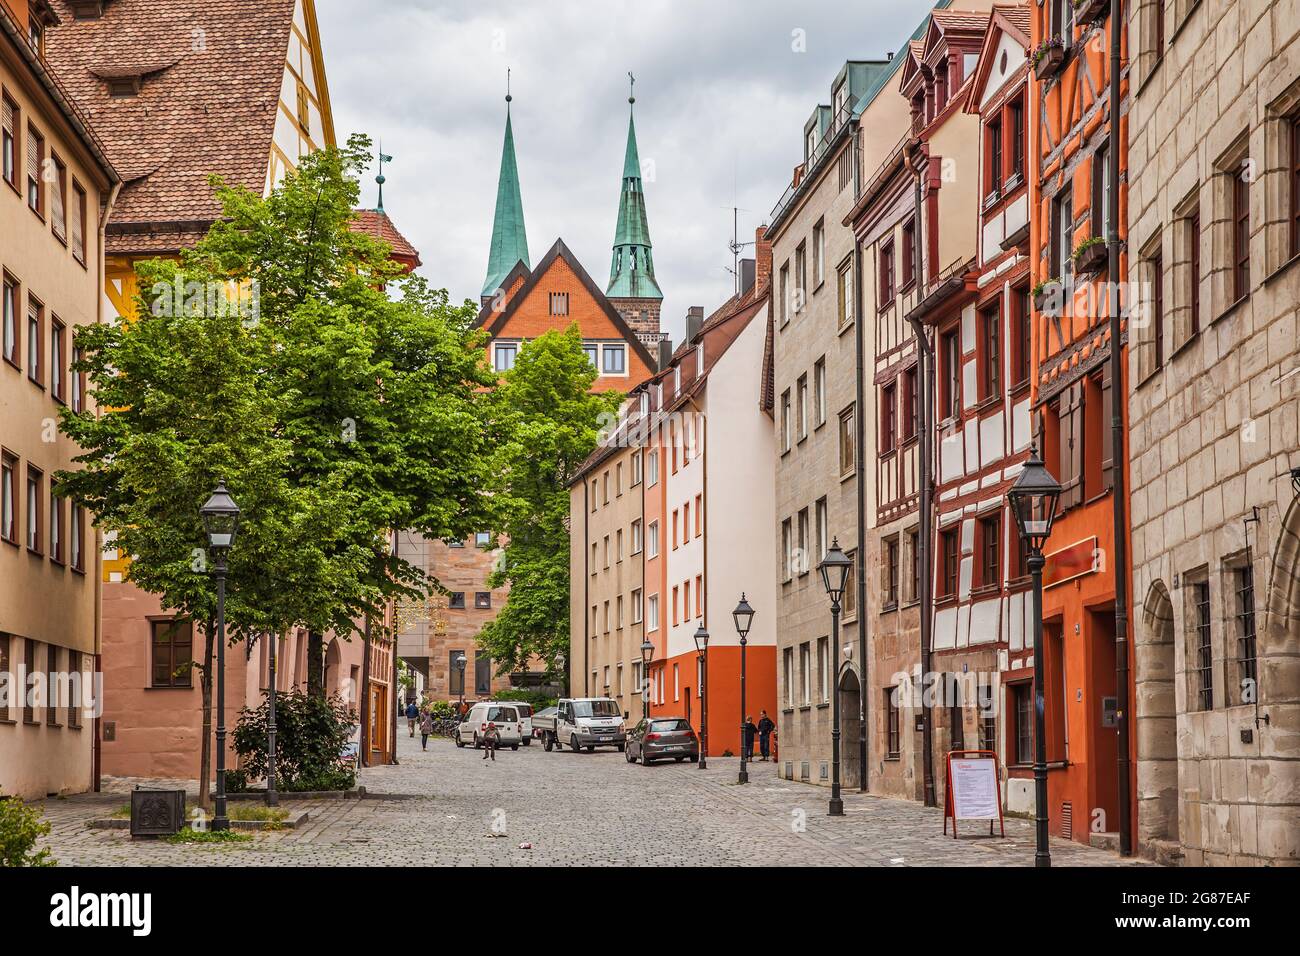 Nuremberg, Allemagne - 17 mai 2016 : rue dans la vieille ville de Nuremberg. Paysage urbain Banque D'Images